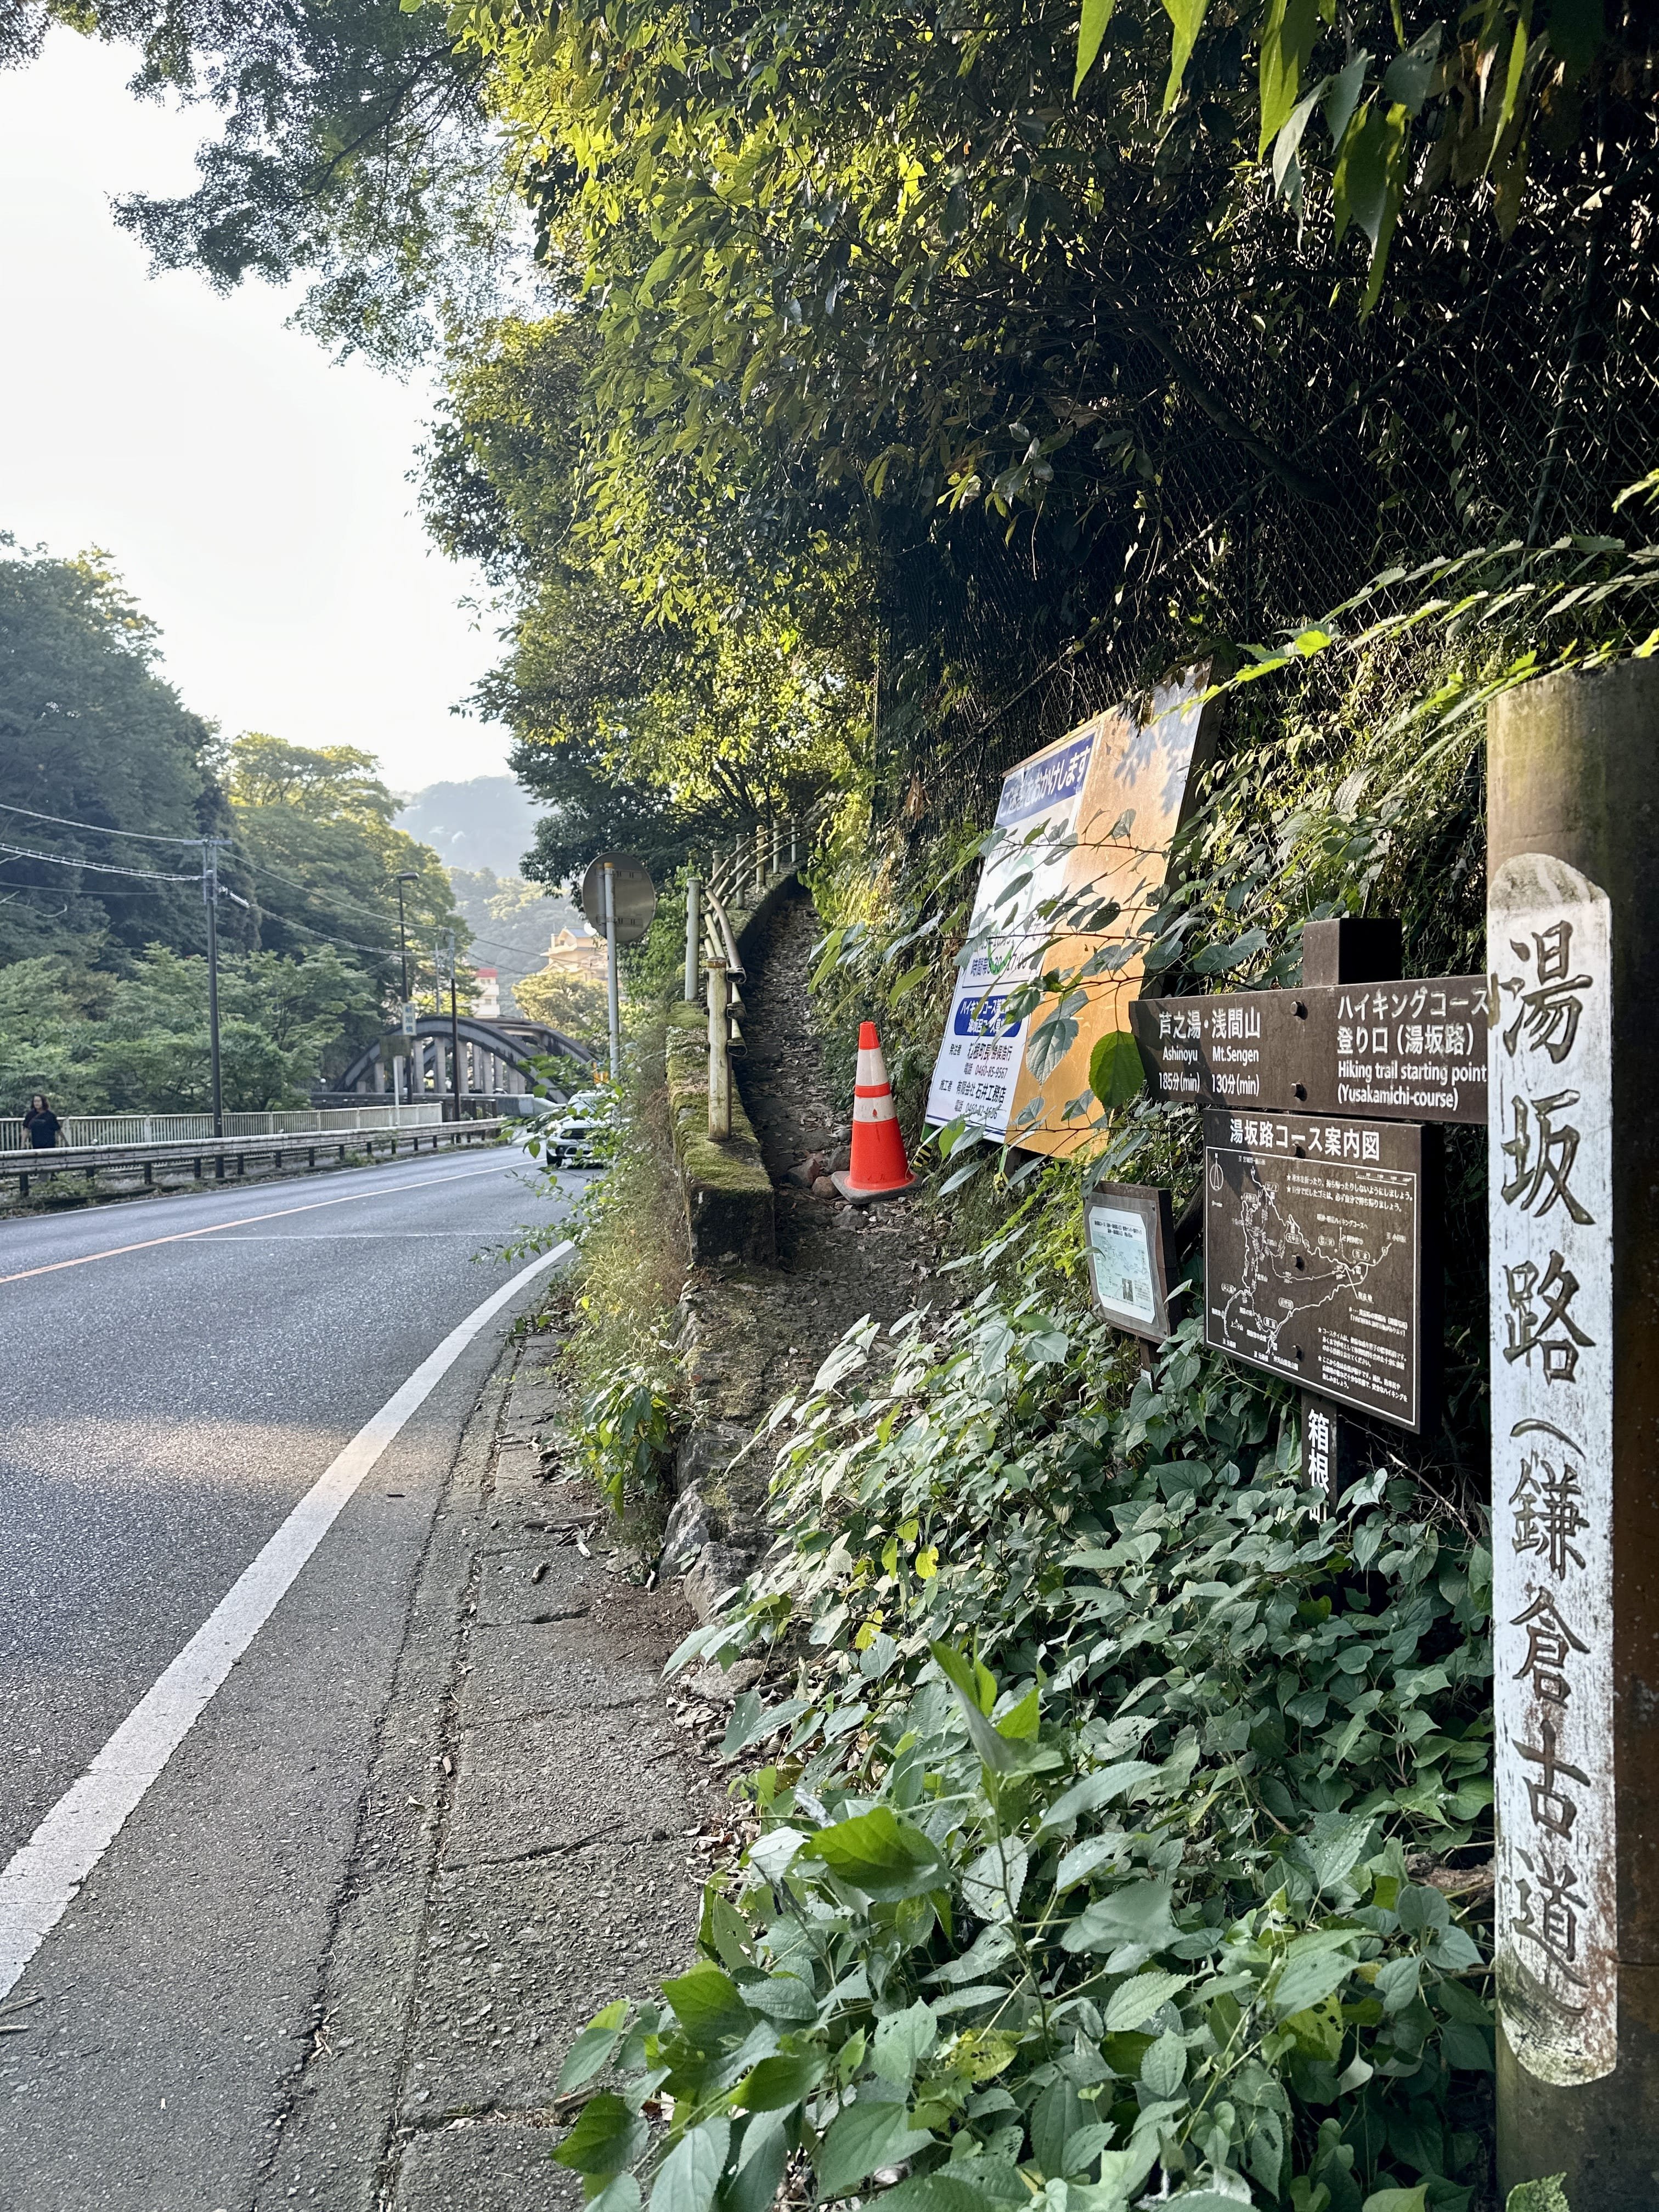 Entrance to Yusakamichi Hiking Course in Hakone Japan